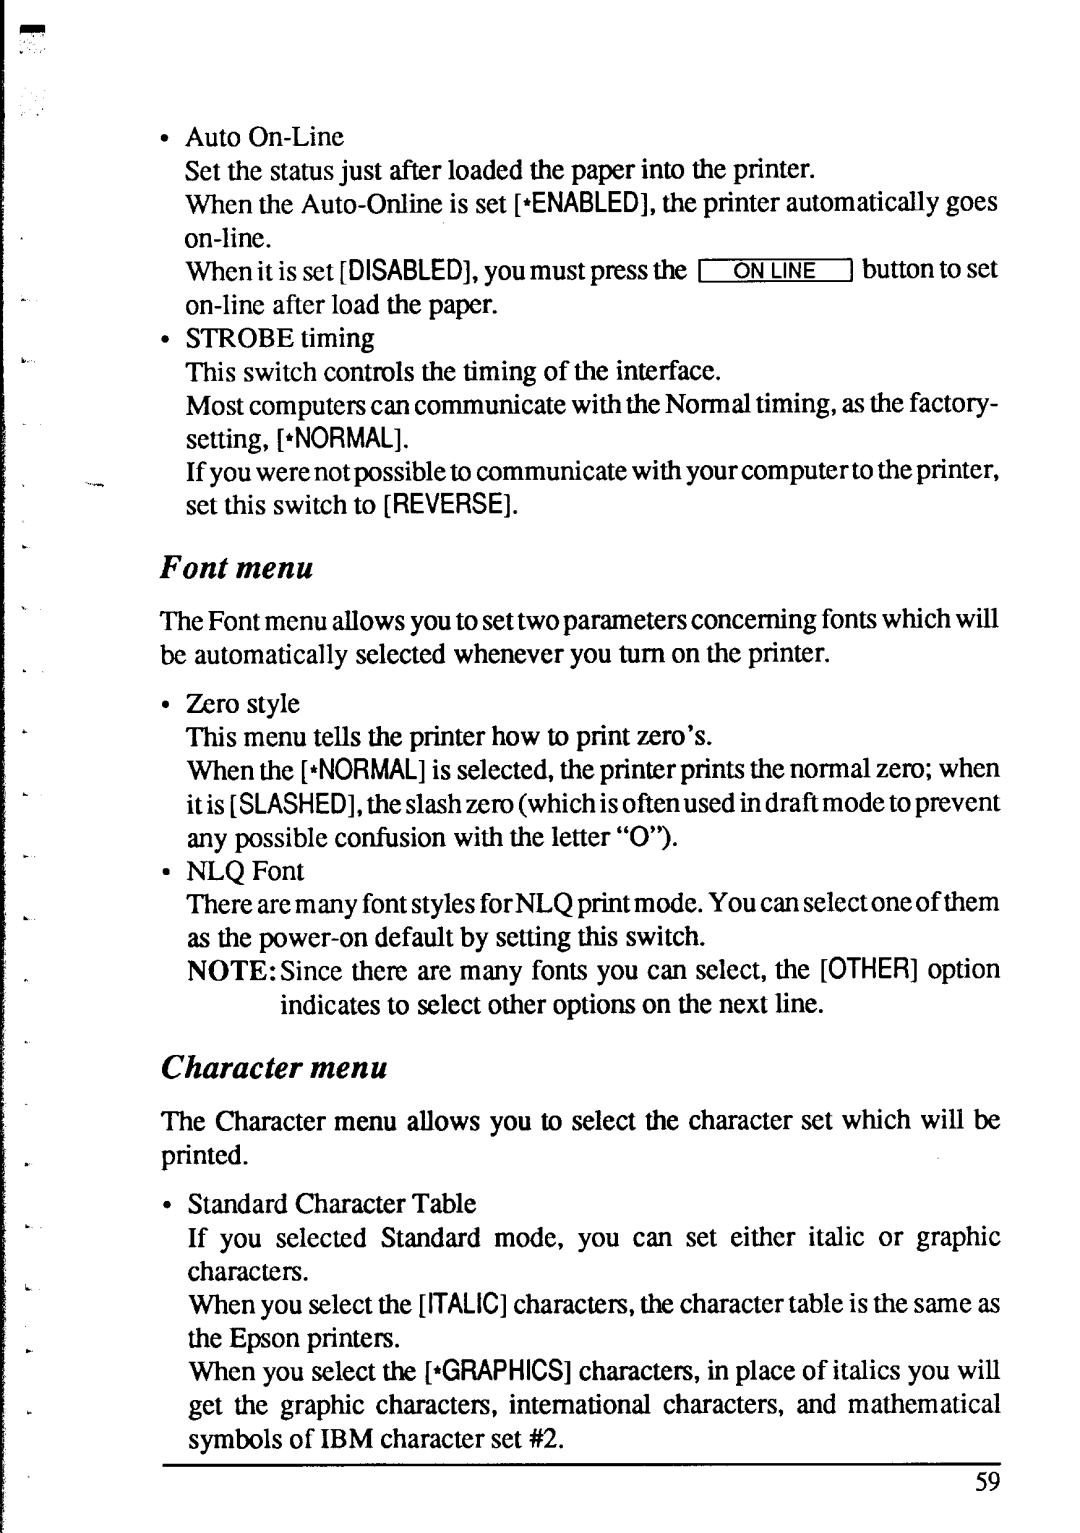 Star Micronics XR-1520, XR-1020 manual Font menu, Character menu 